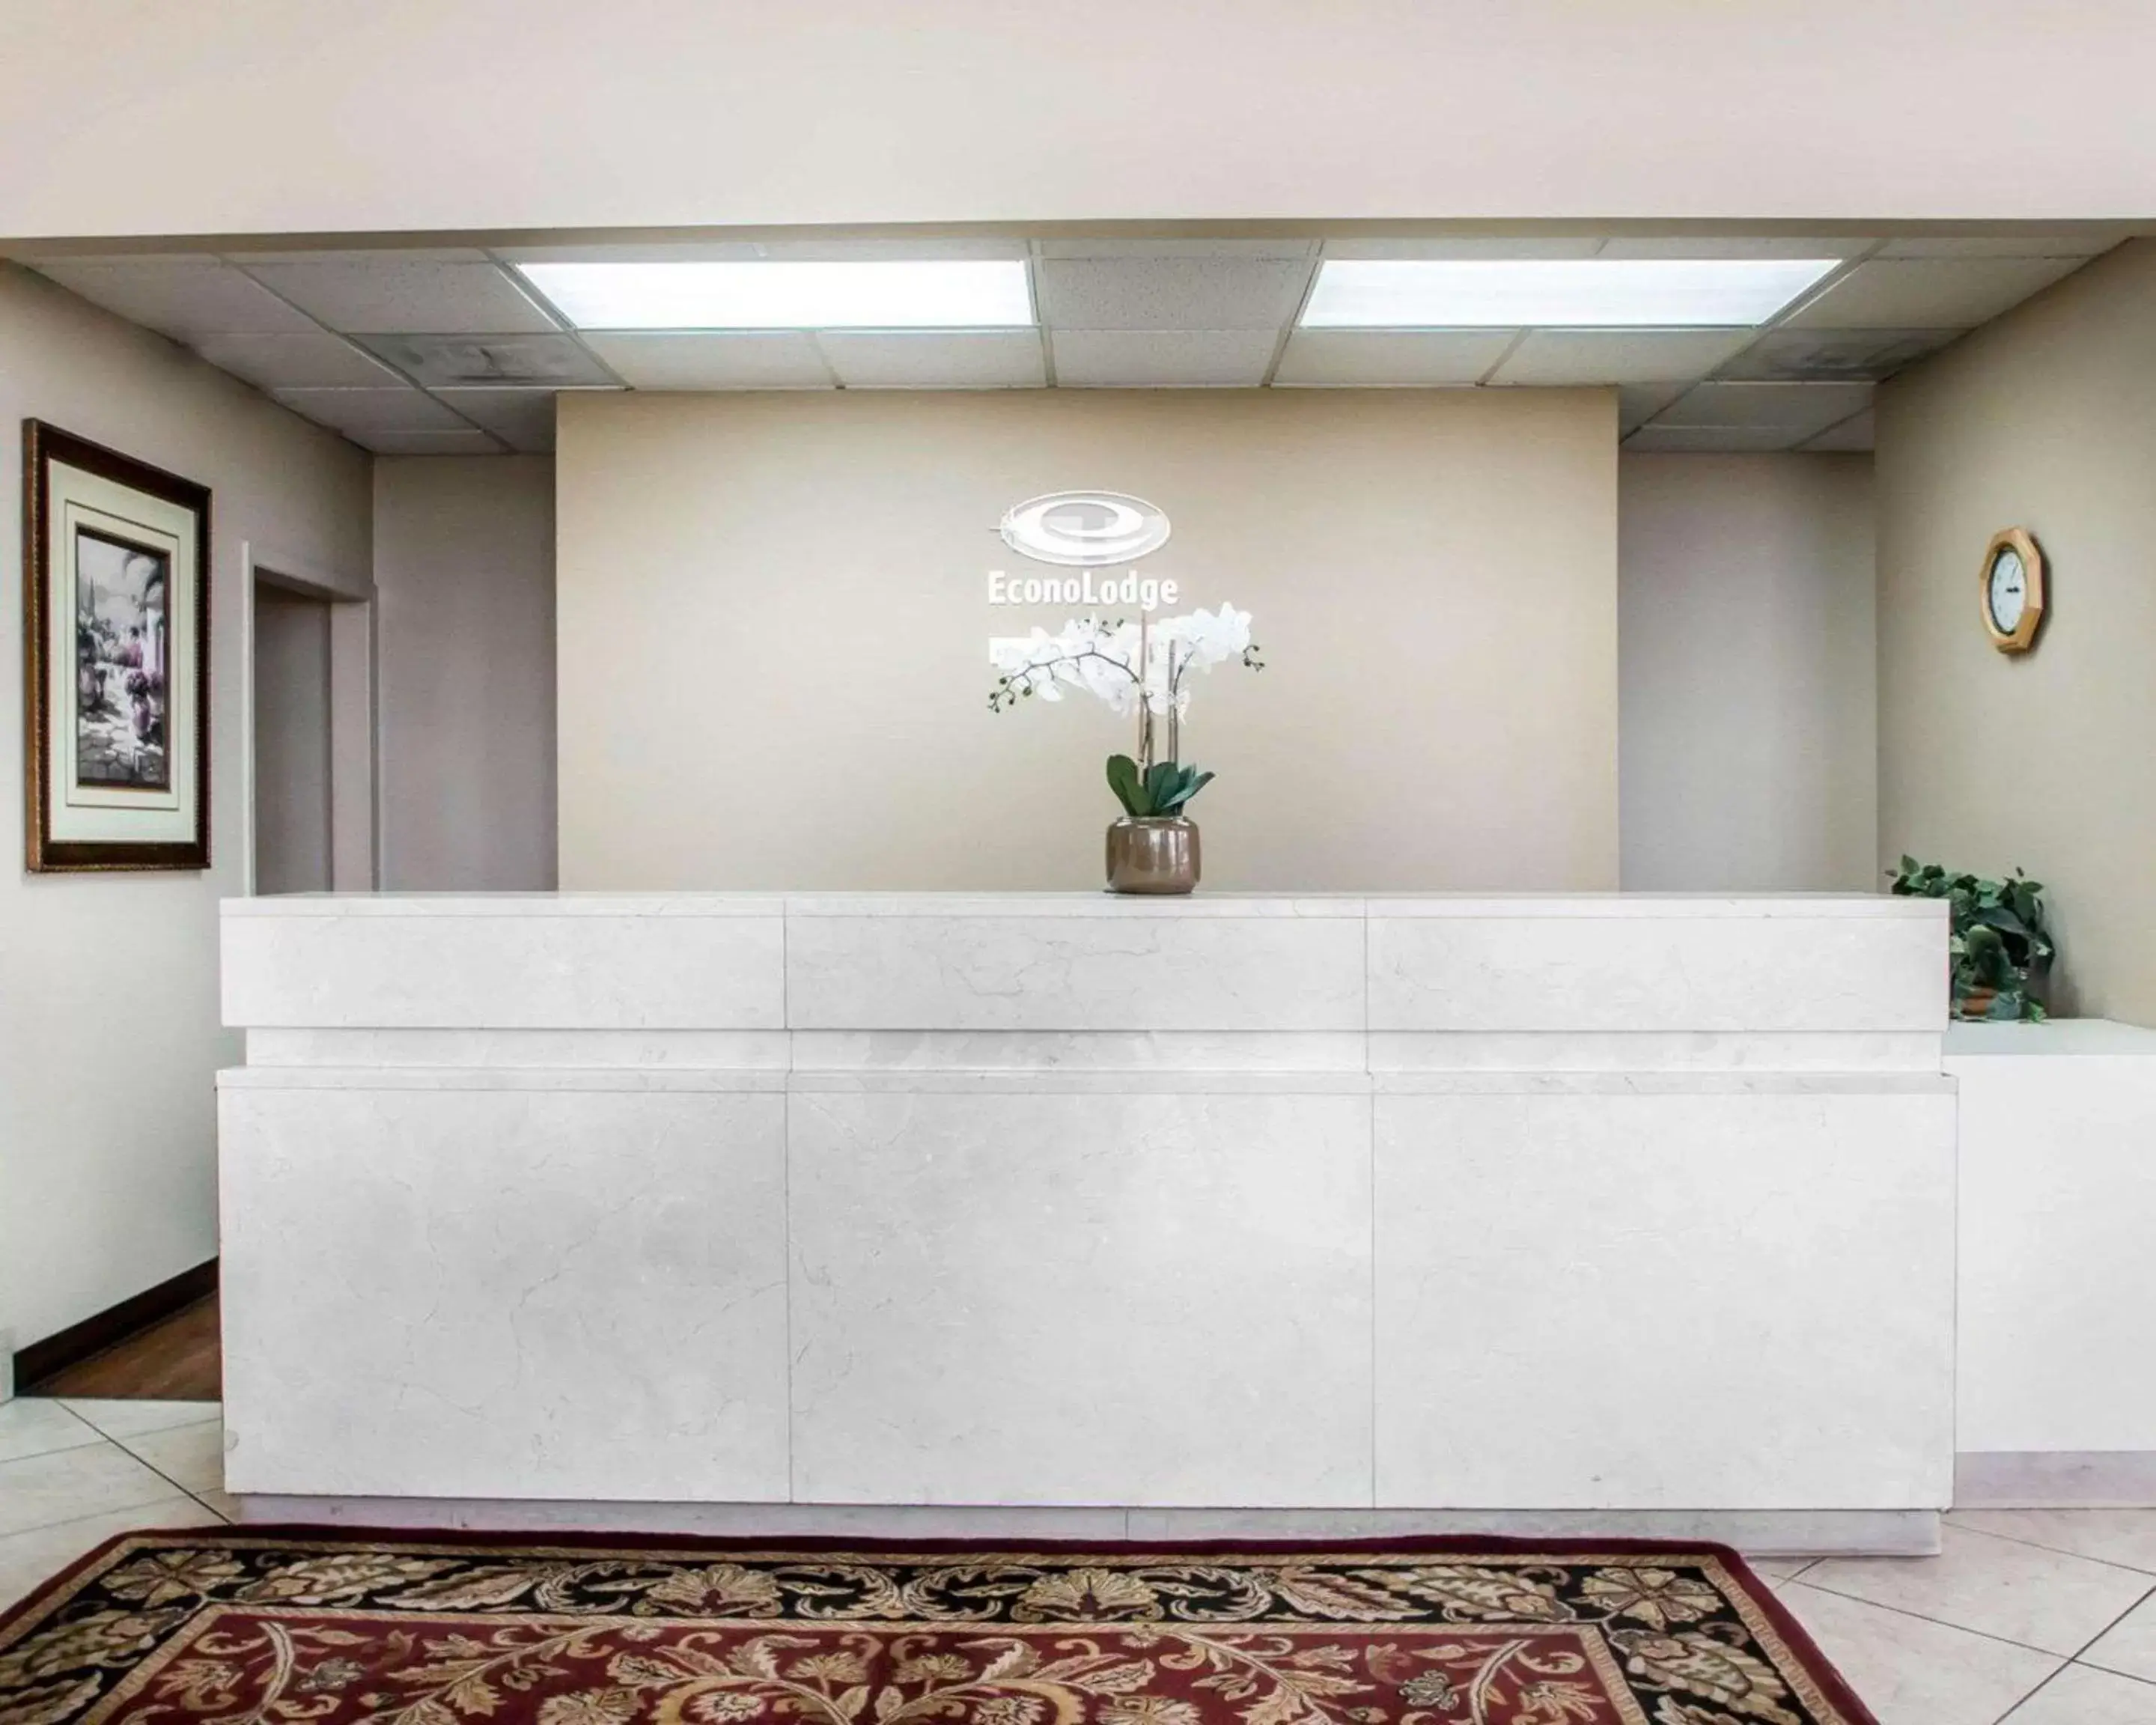 Lobby or reception, Lobby/Reception in Econo Lodge Springfield I-44